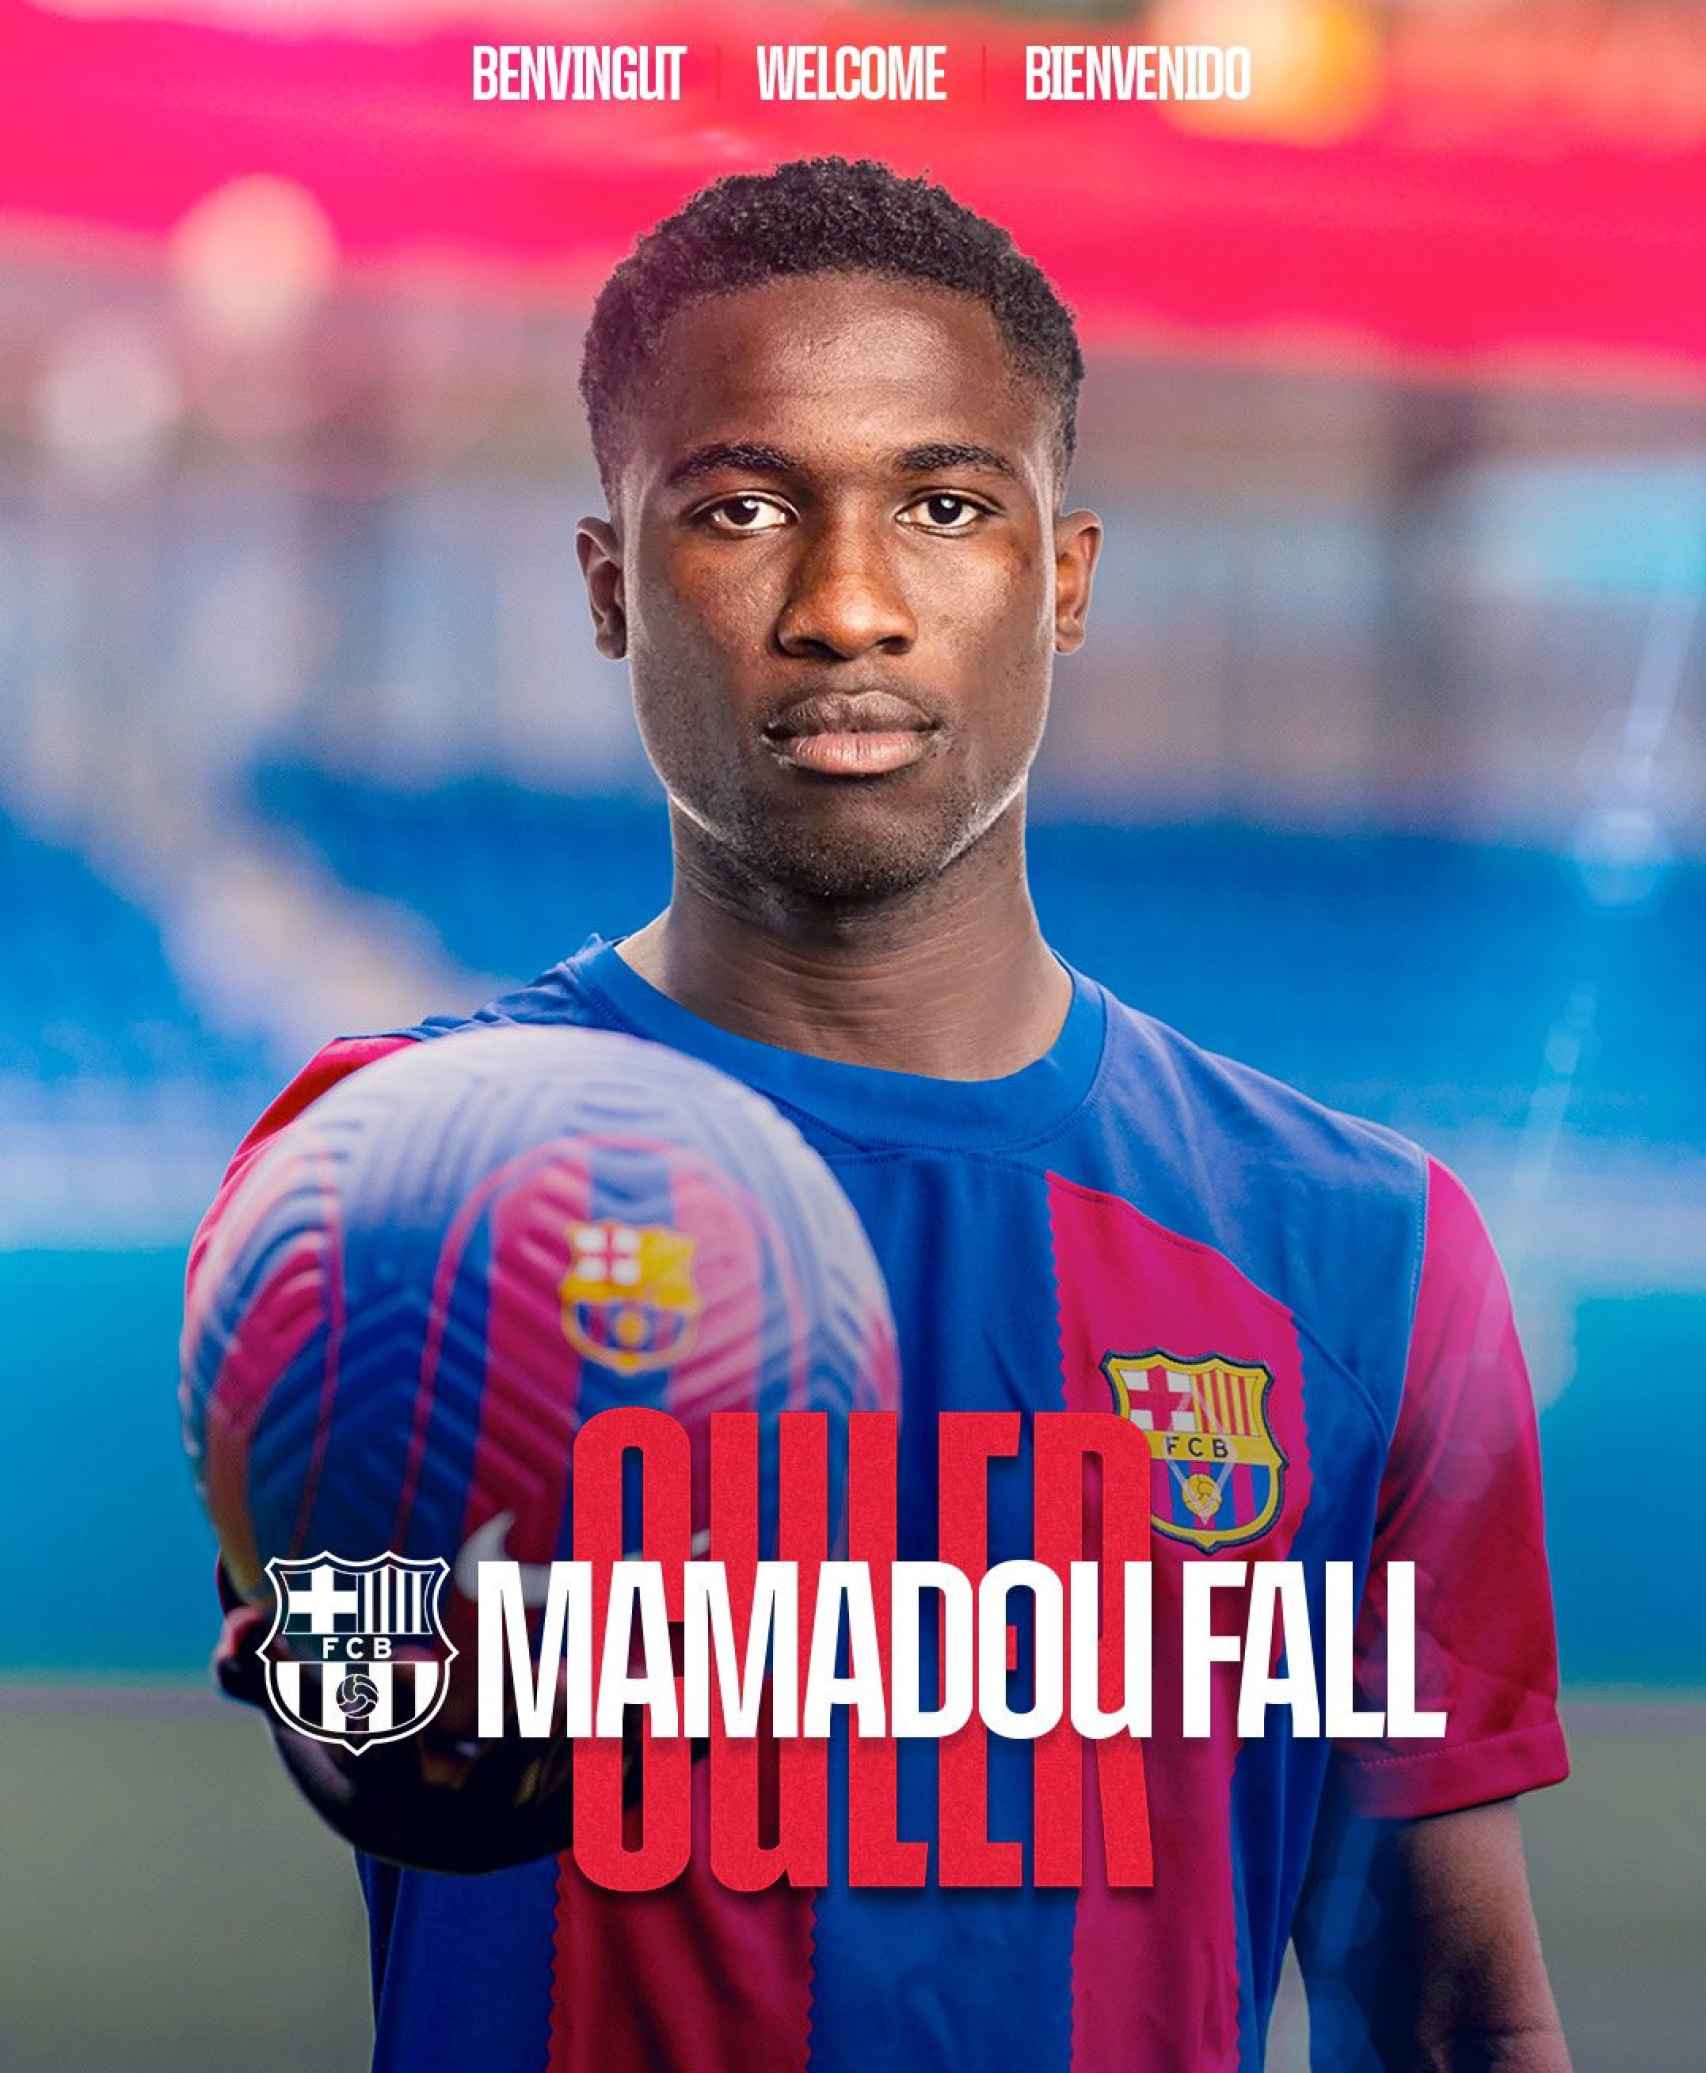 El Barça presenta el fichaje de Mamadou Fall